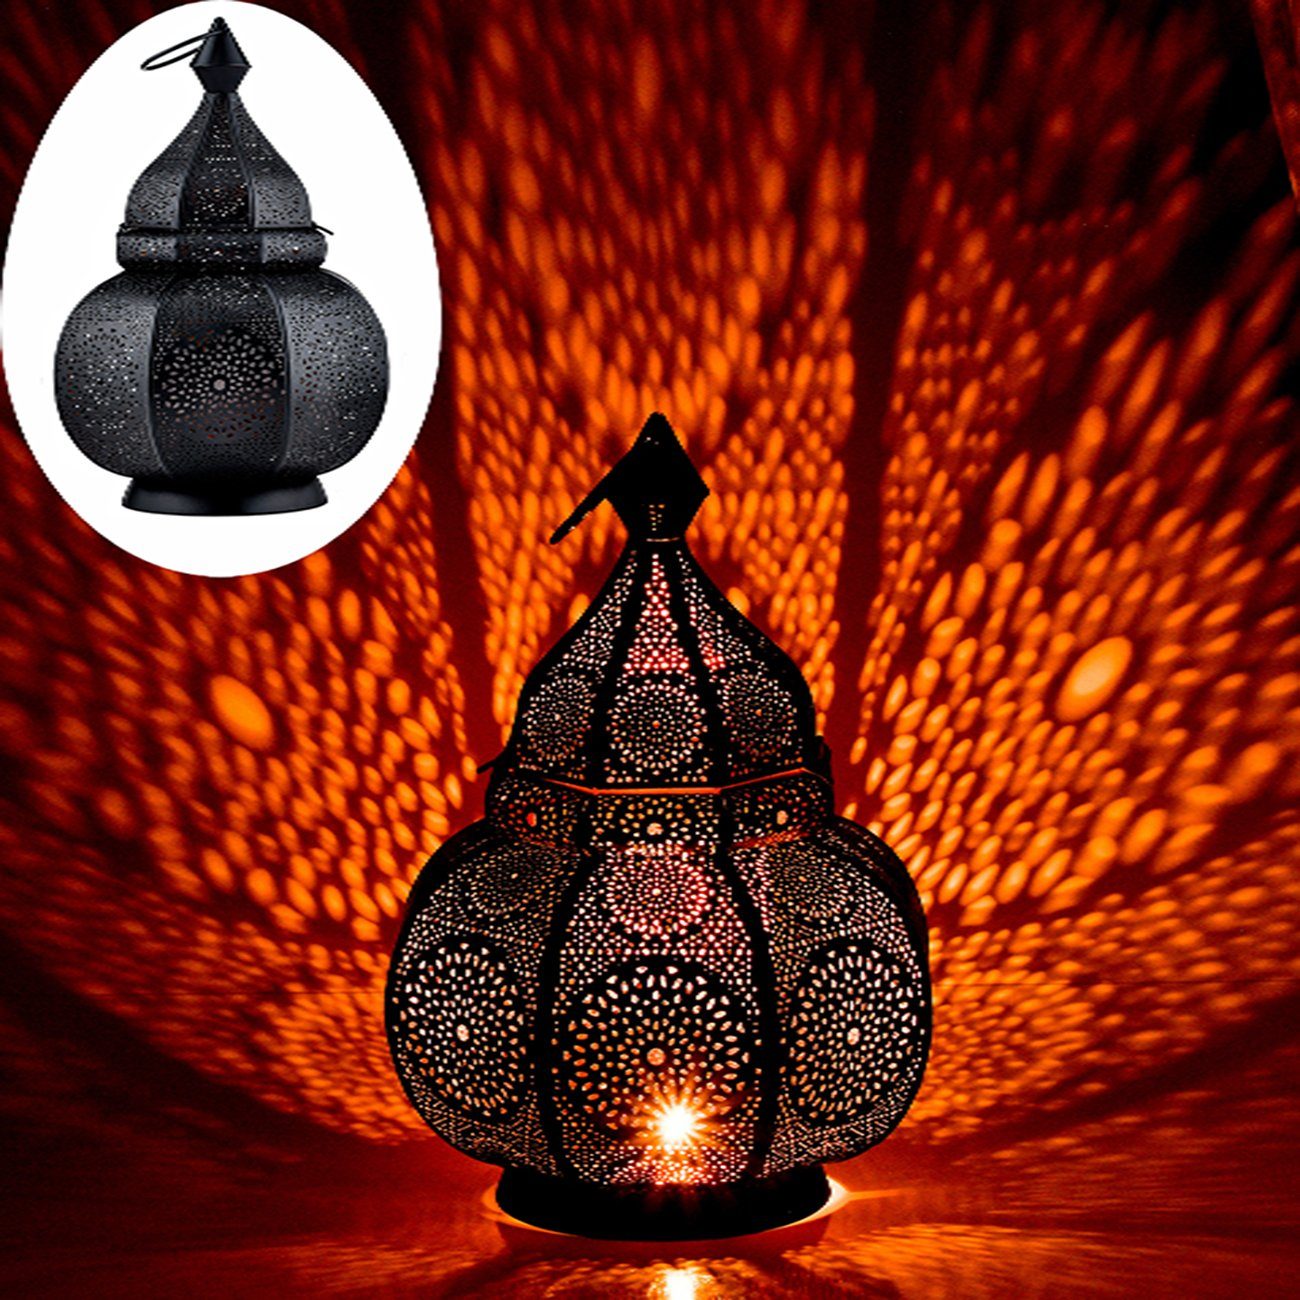 Buy MARRAKESCH ORIENT & MEDITERRAN INTERIOR Lanterns online